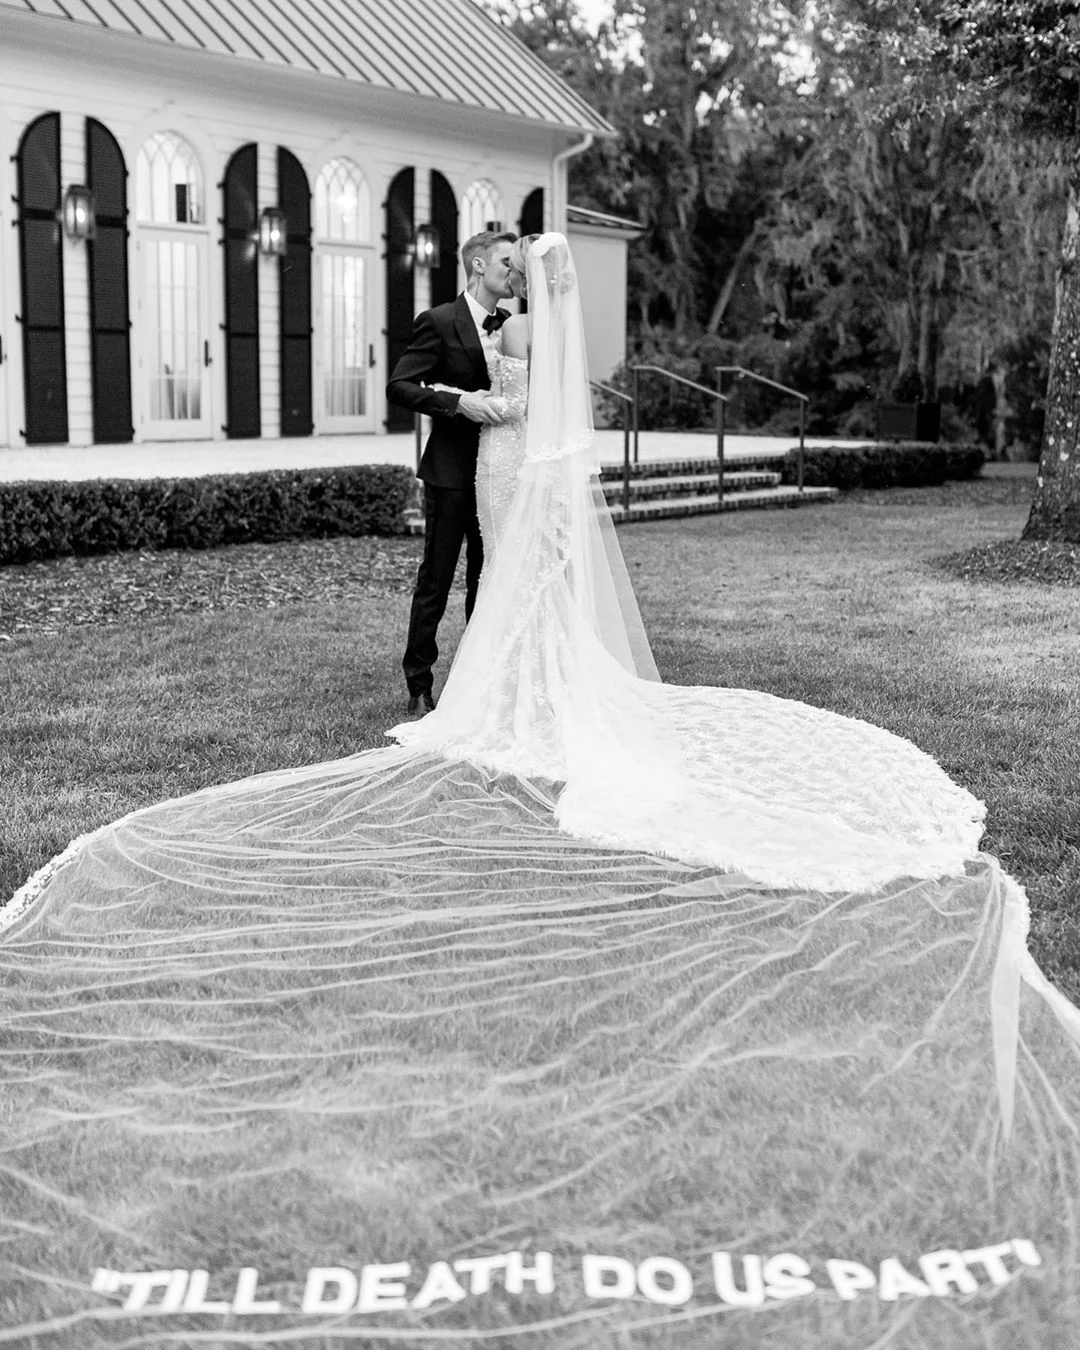 Хейли Бибер поделилась фото со свадьбы, на которых можно увидеть ее роскошное платье - фото 453221